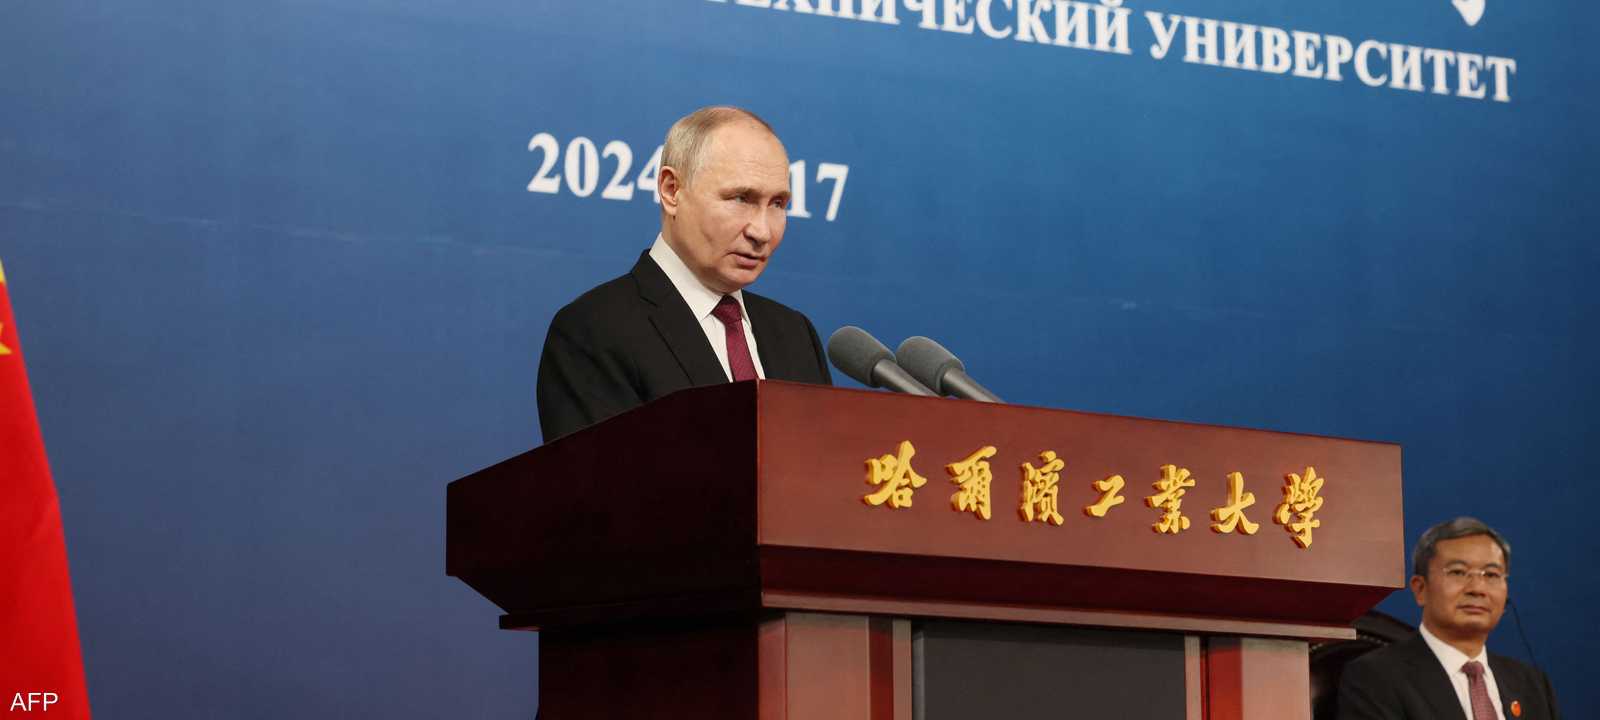 بوتين أعلن إنشاء روسيا منطقة عازلة في خاركيف